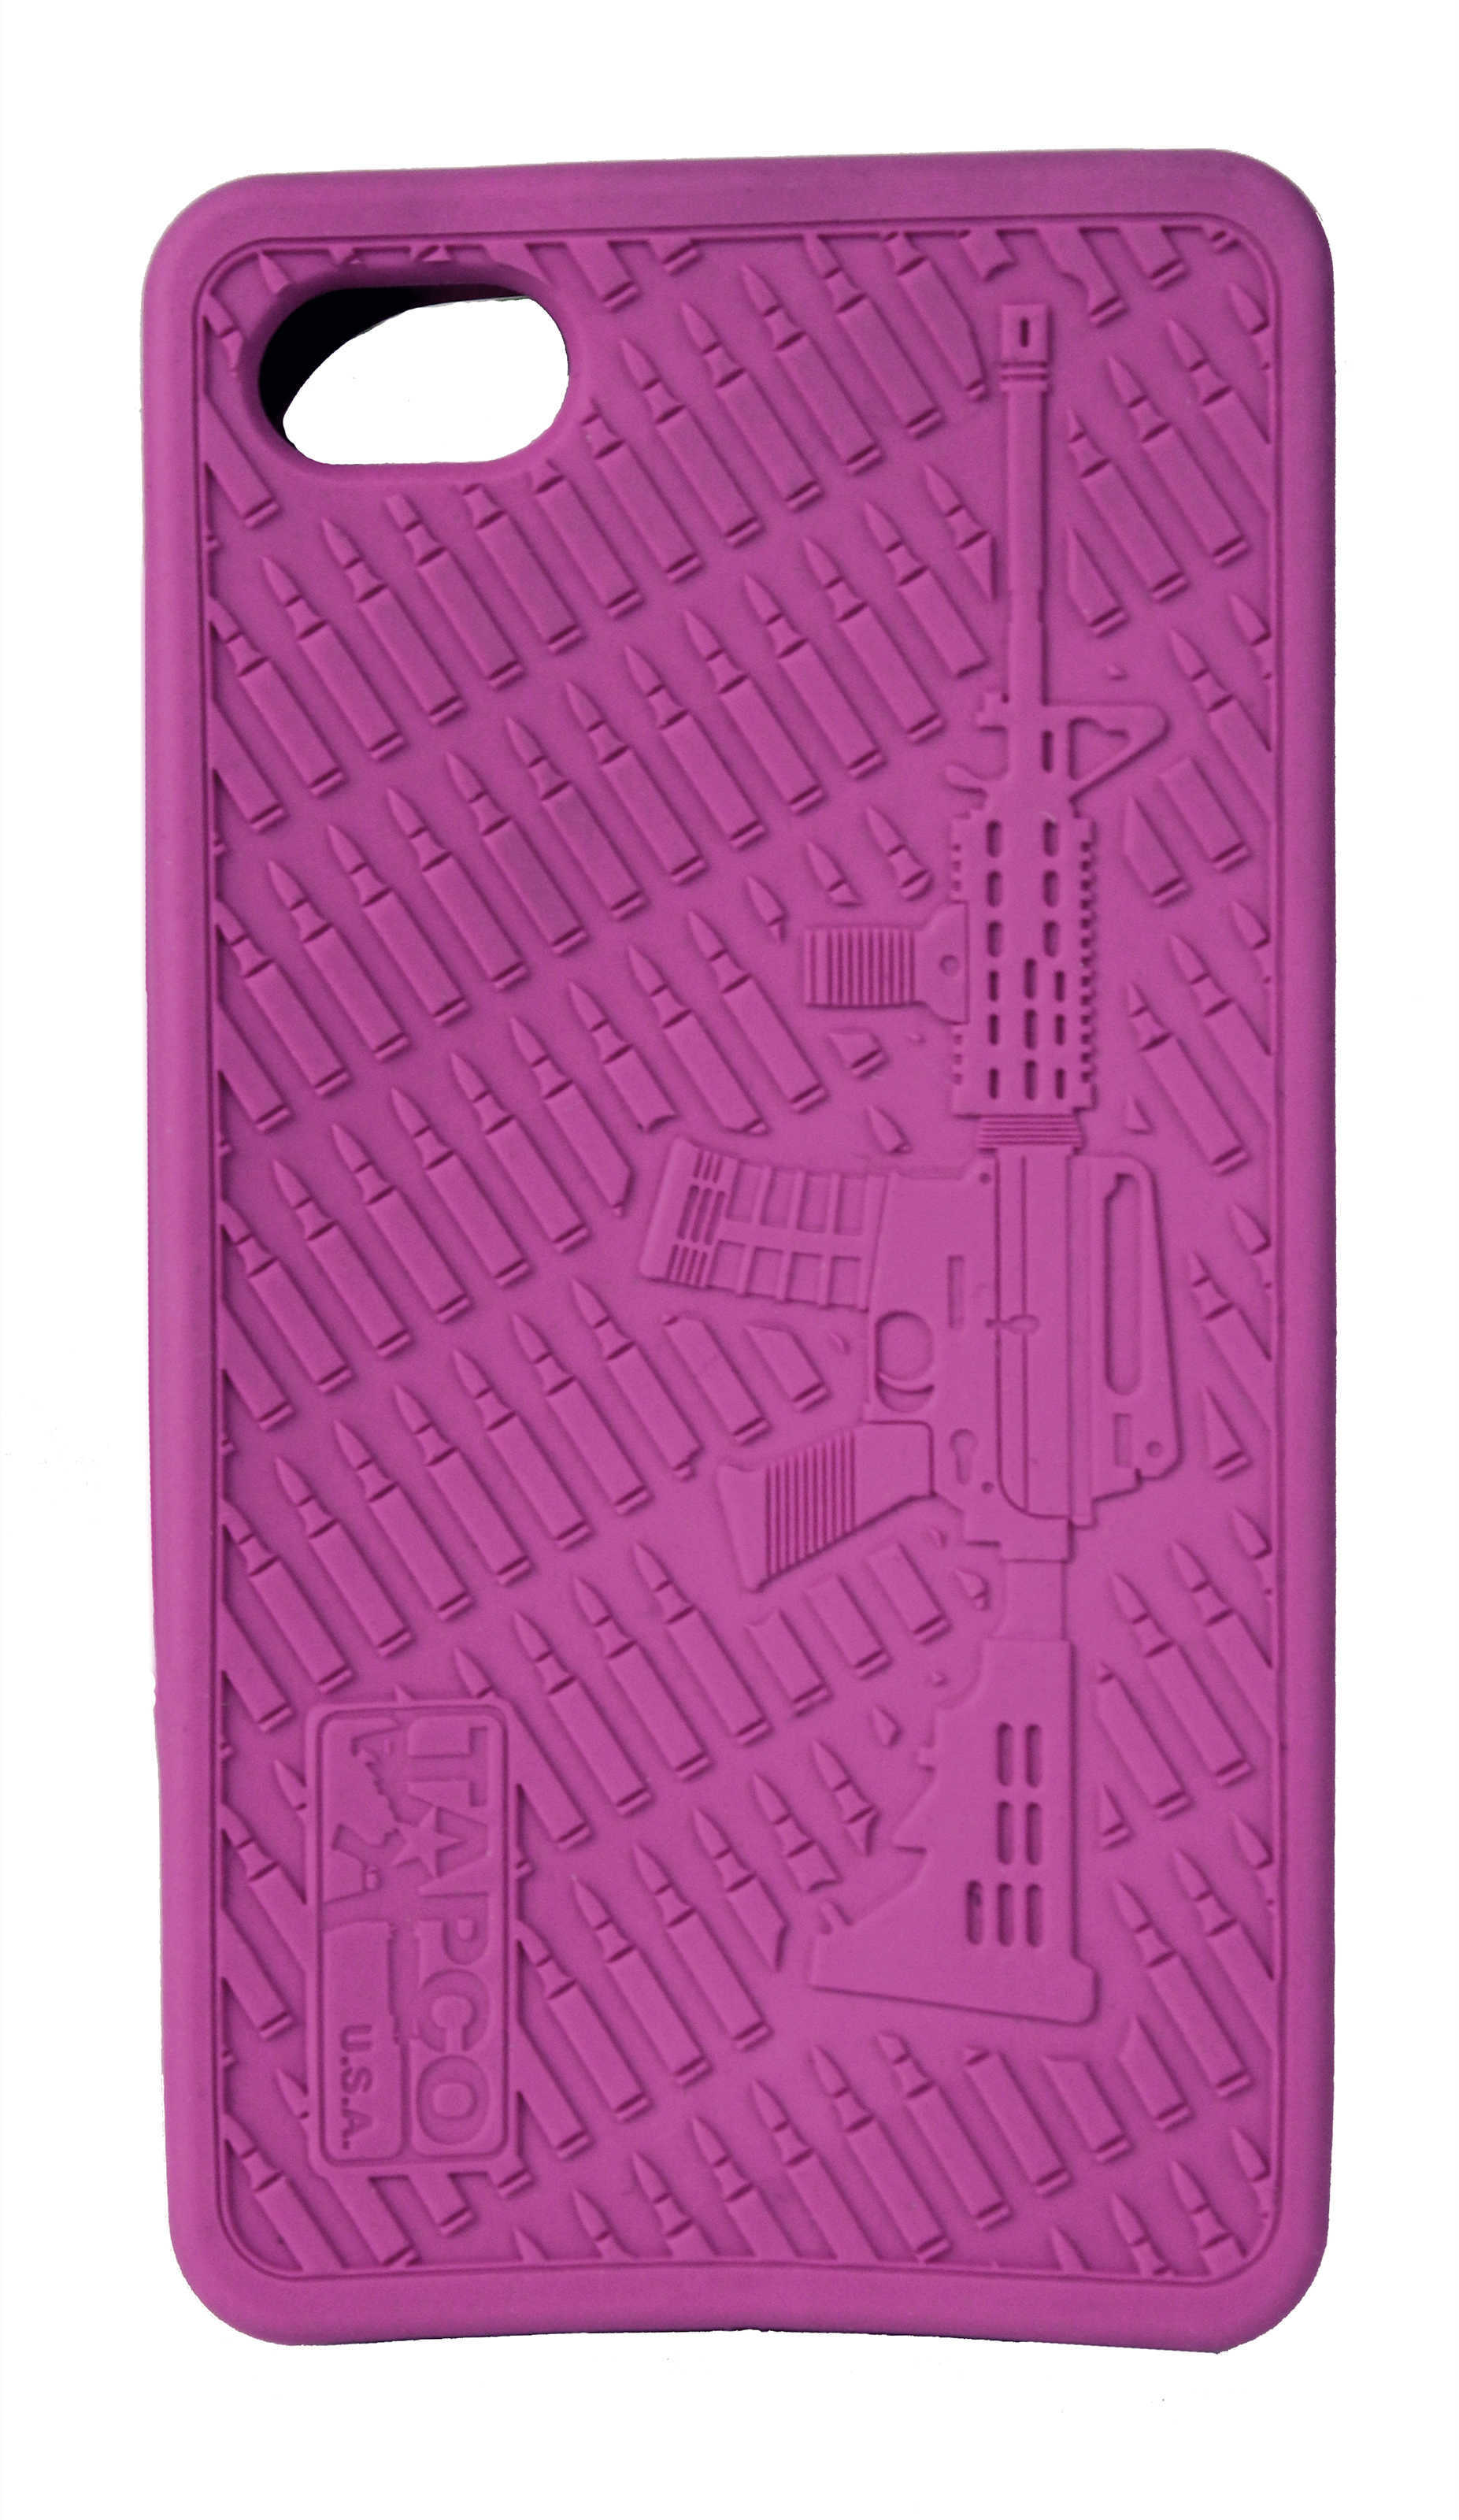 Tapco iPhone 4/4s AR-15 Case Pink IPHONE011AR-PNK